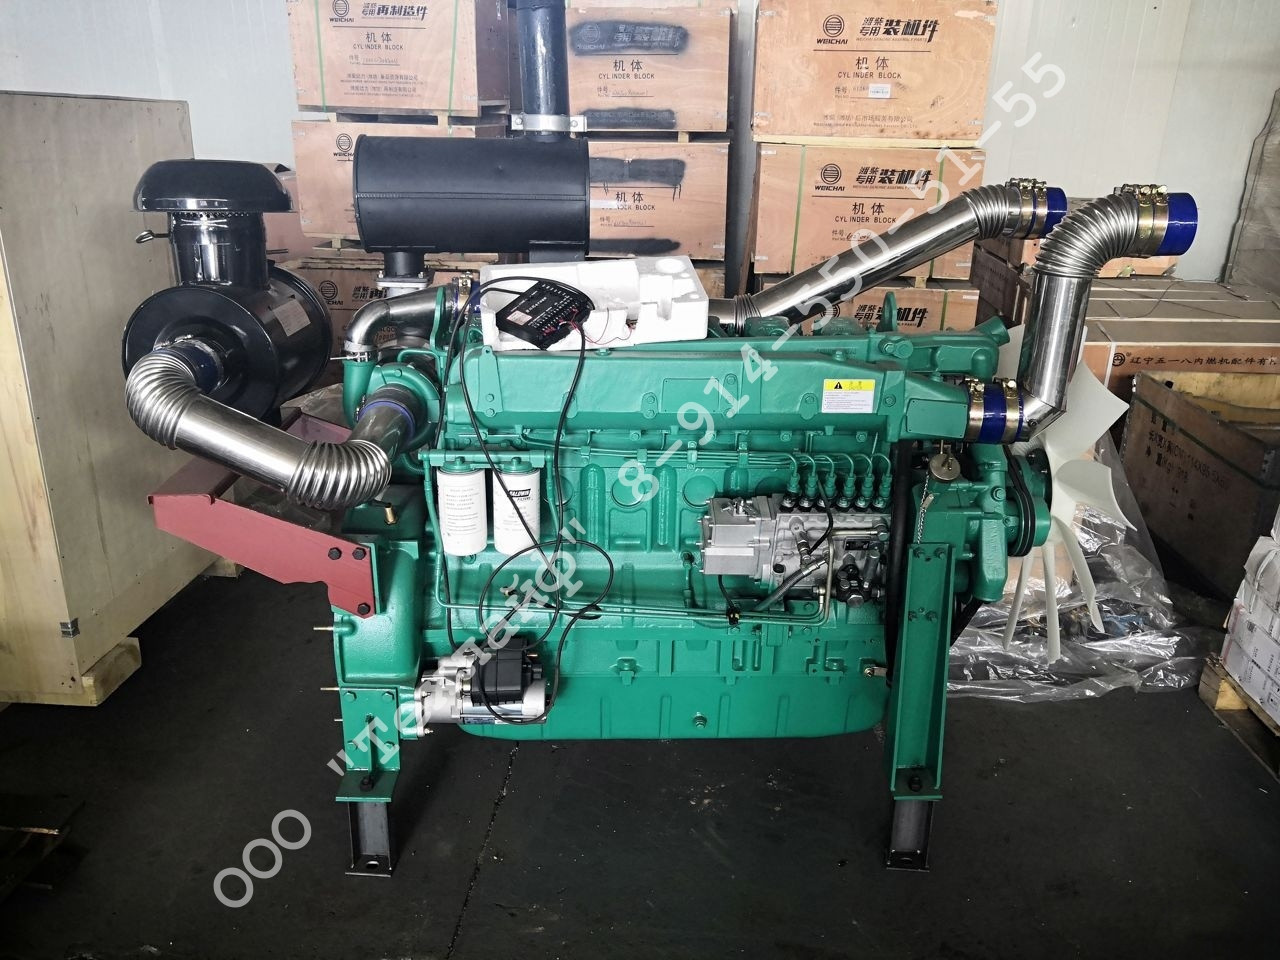 Двигатель Weichai WP12D317E200 для ДГУ (дизель-генераторной установки), 50 Гц, фото 1